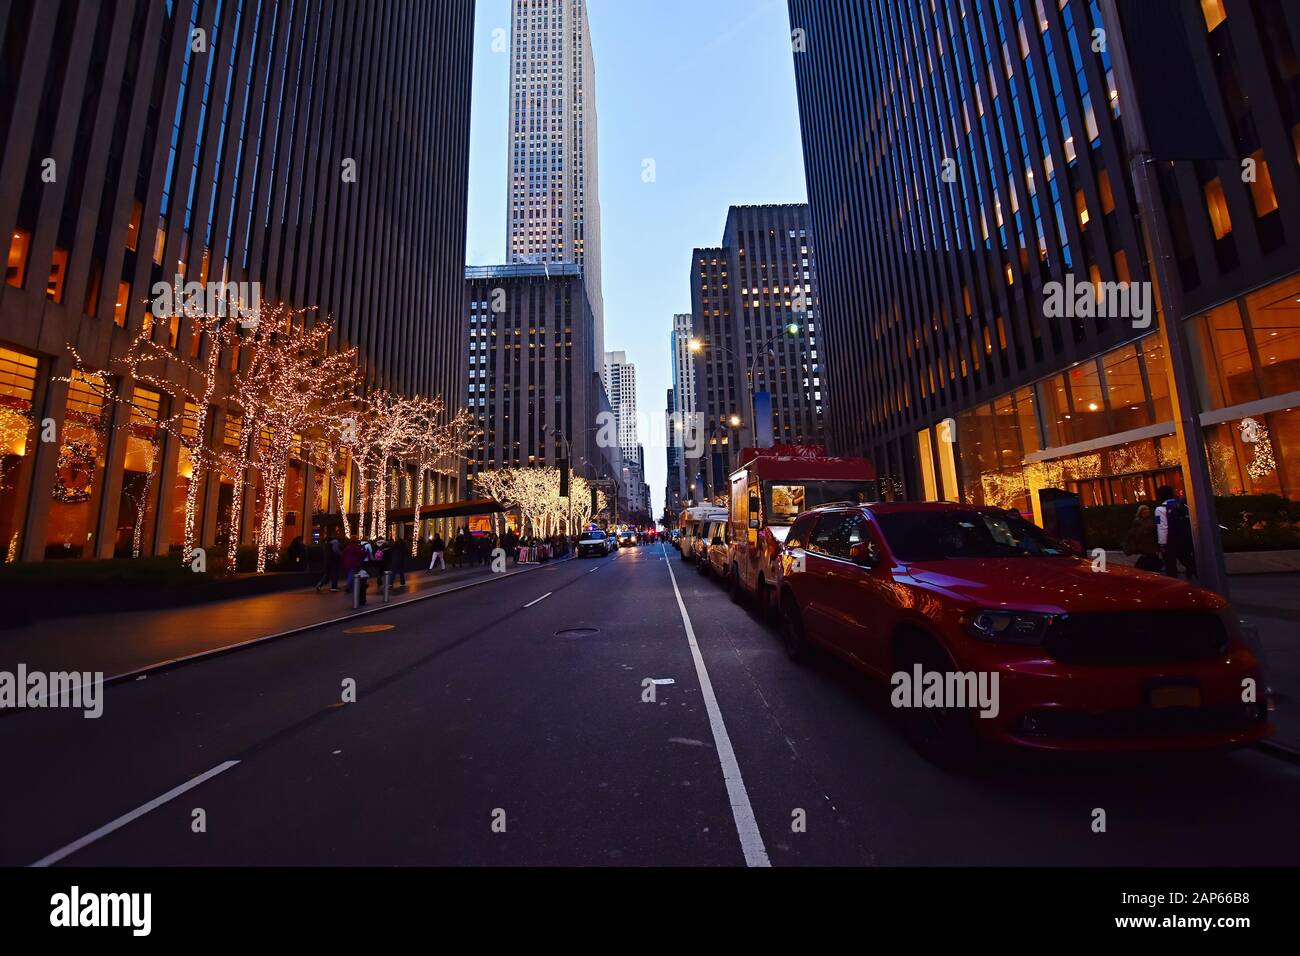 Vista notturna della strada e vita cittadina sulla Sixth Avenue, conosciuta anche come Avenue of the Americas, Manhattan. Foto Stock